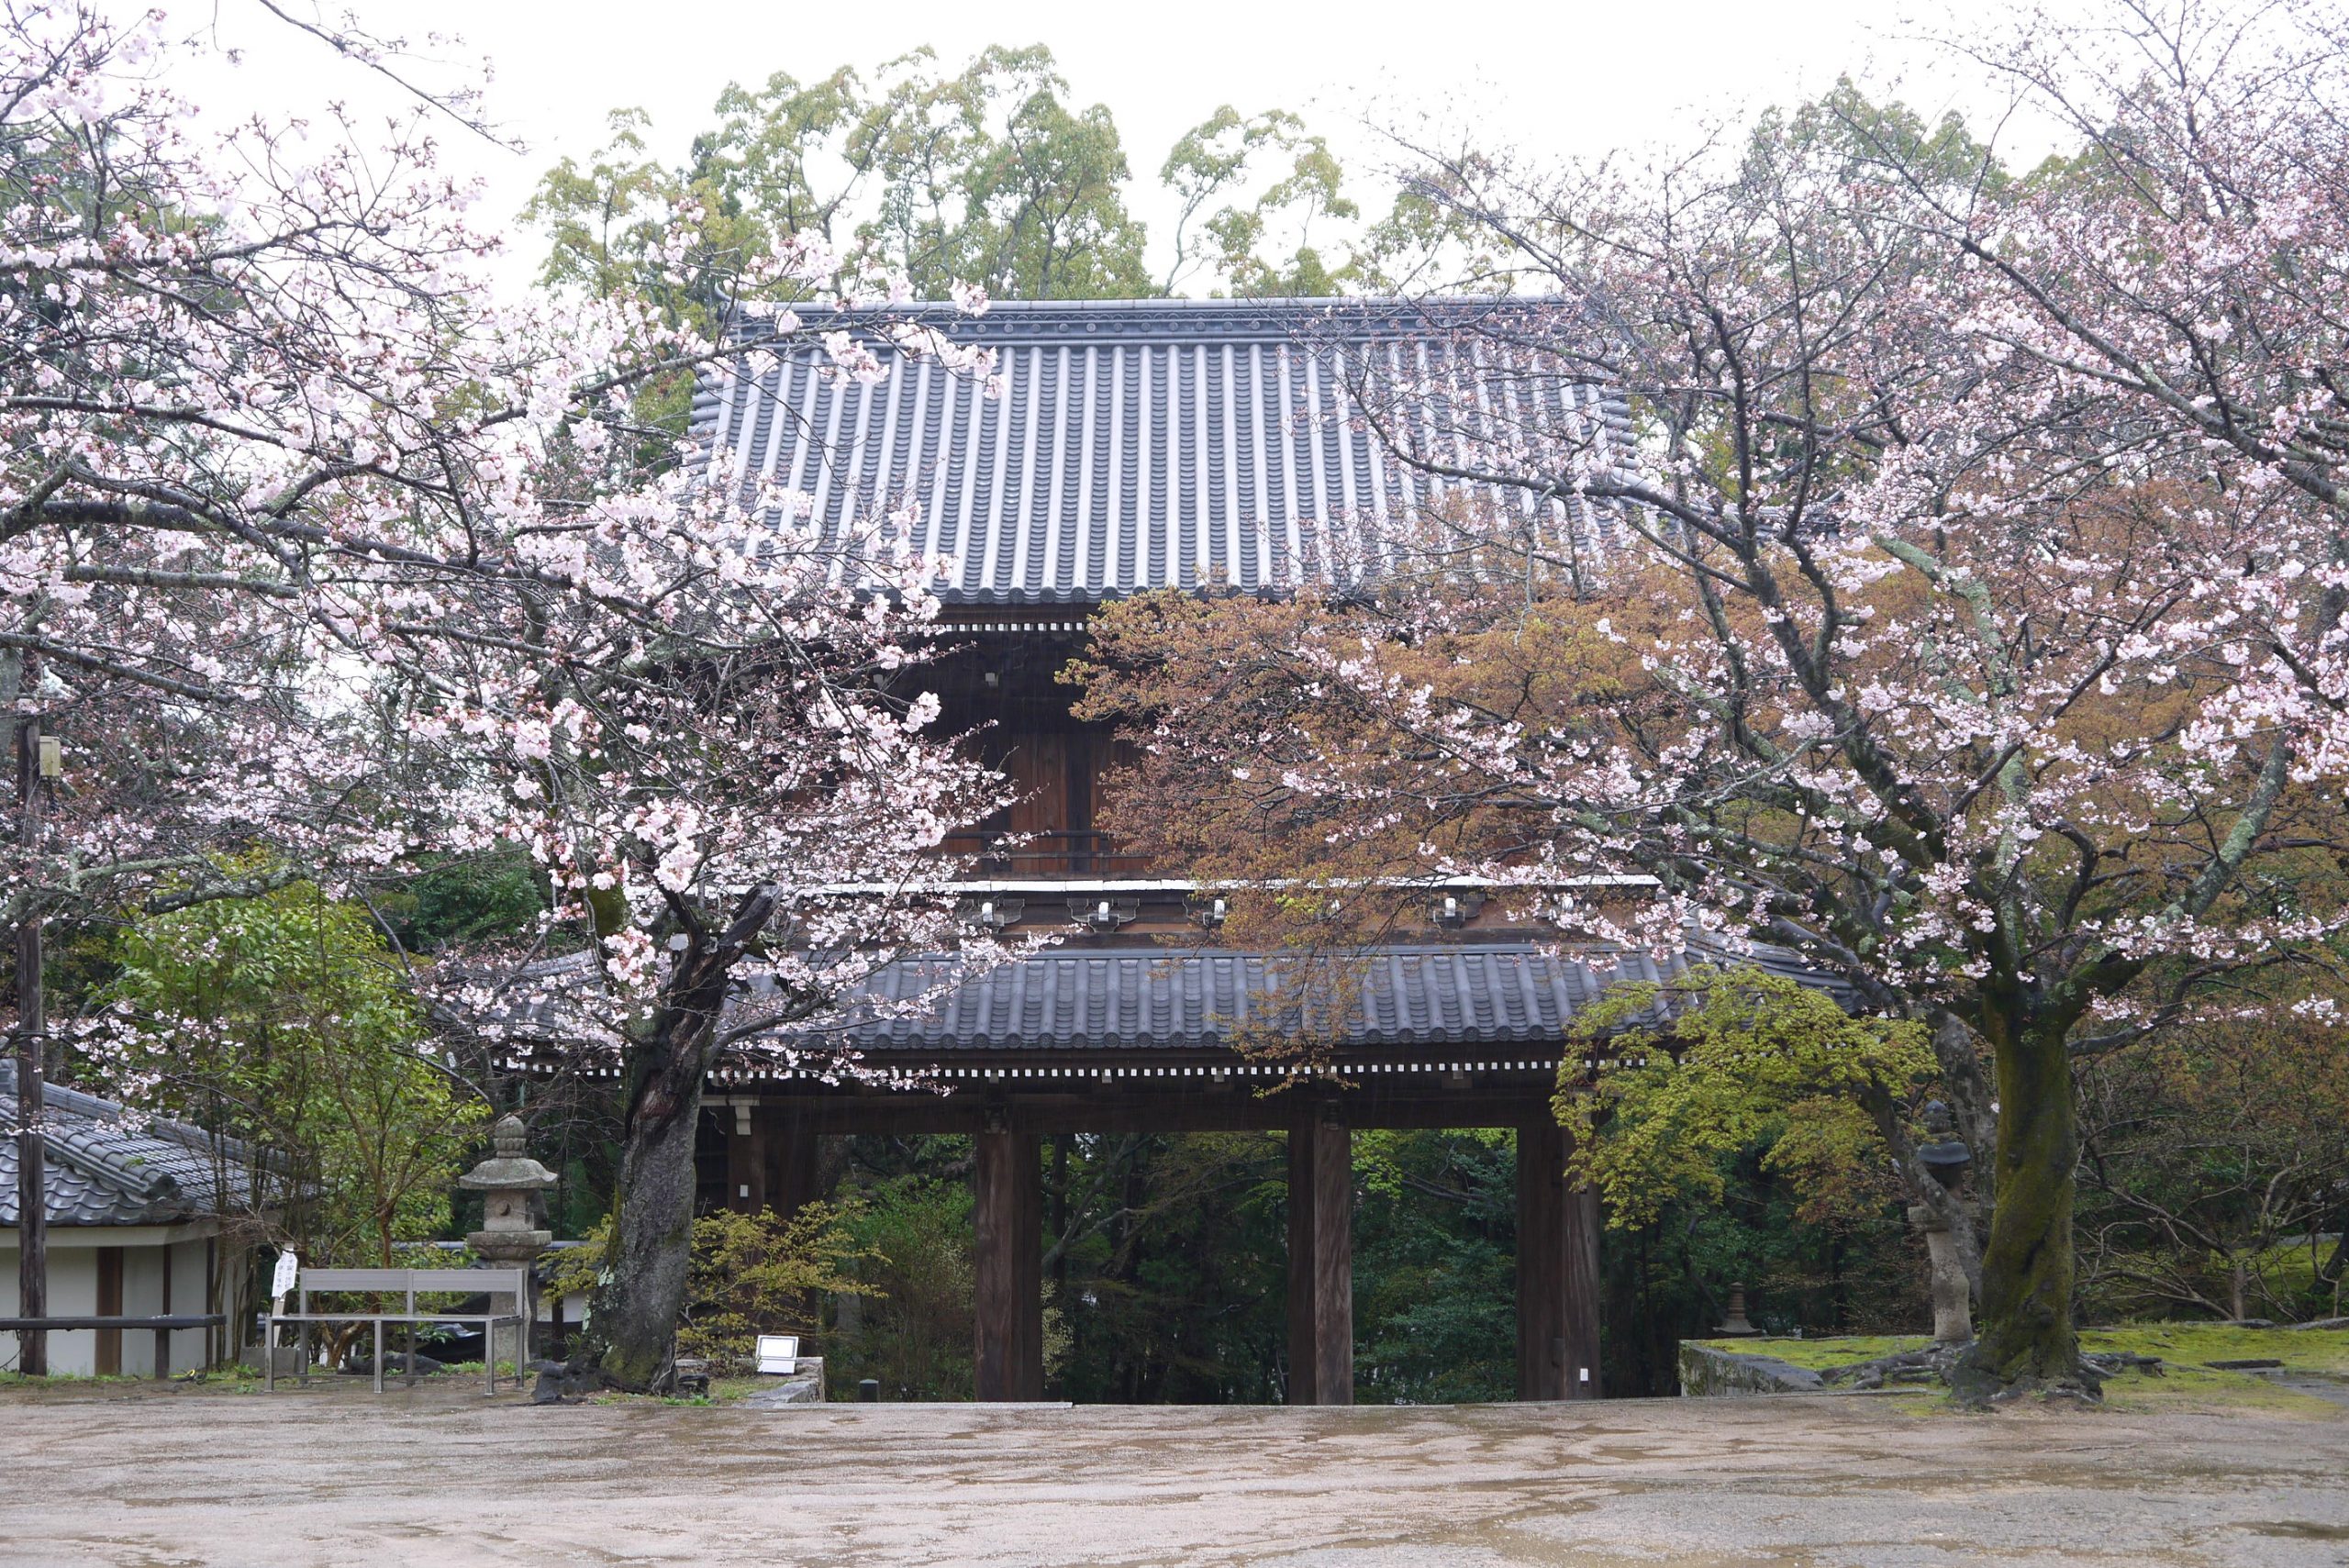 雨の功山寺で桜を見てきました。